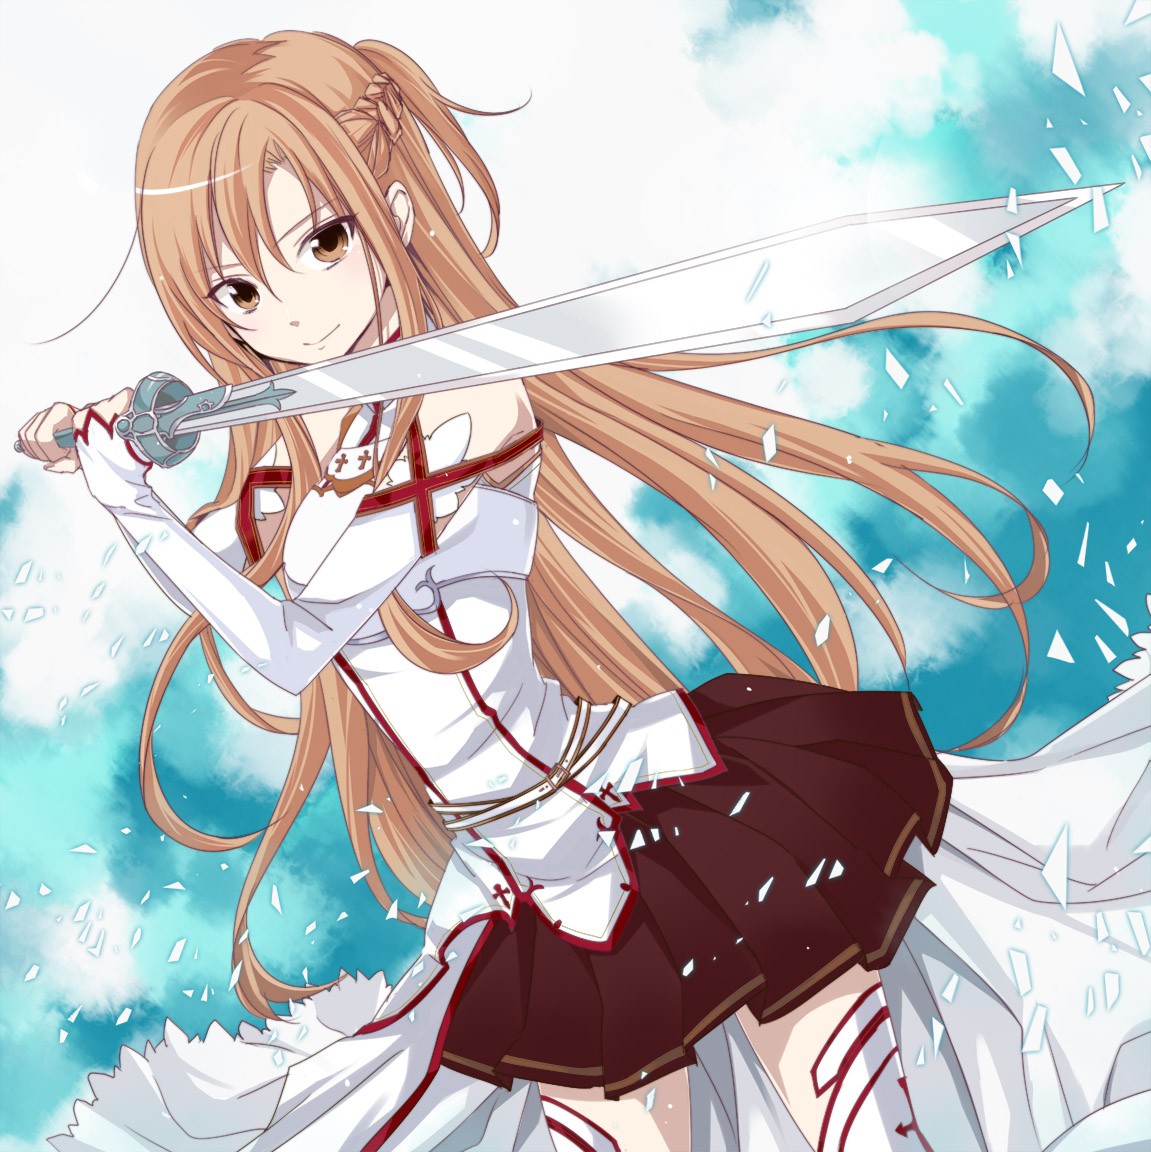 Anime 1151x1152 Sword Art Online anime girls anime Yuuki Asuna (Sword Art Online) sword weapon women with swords